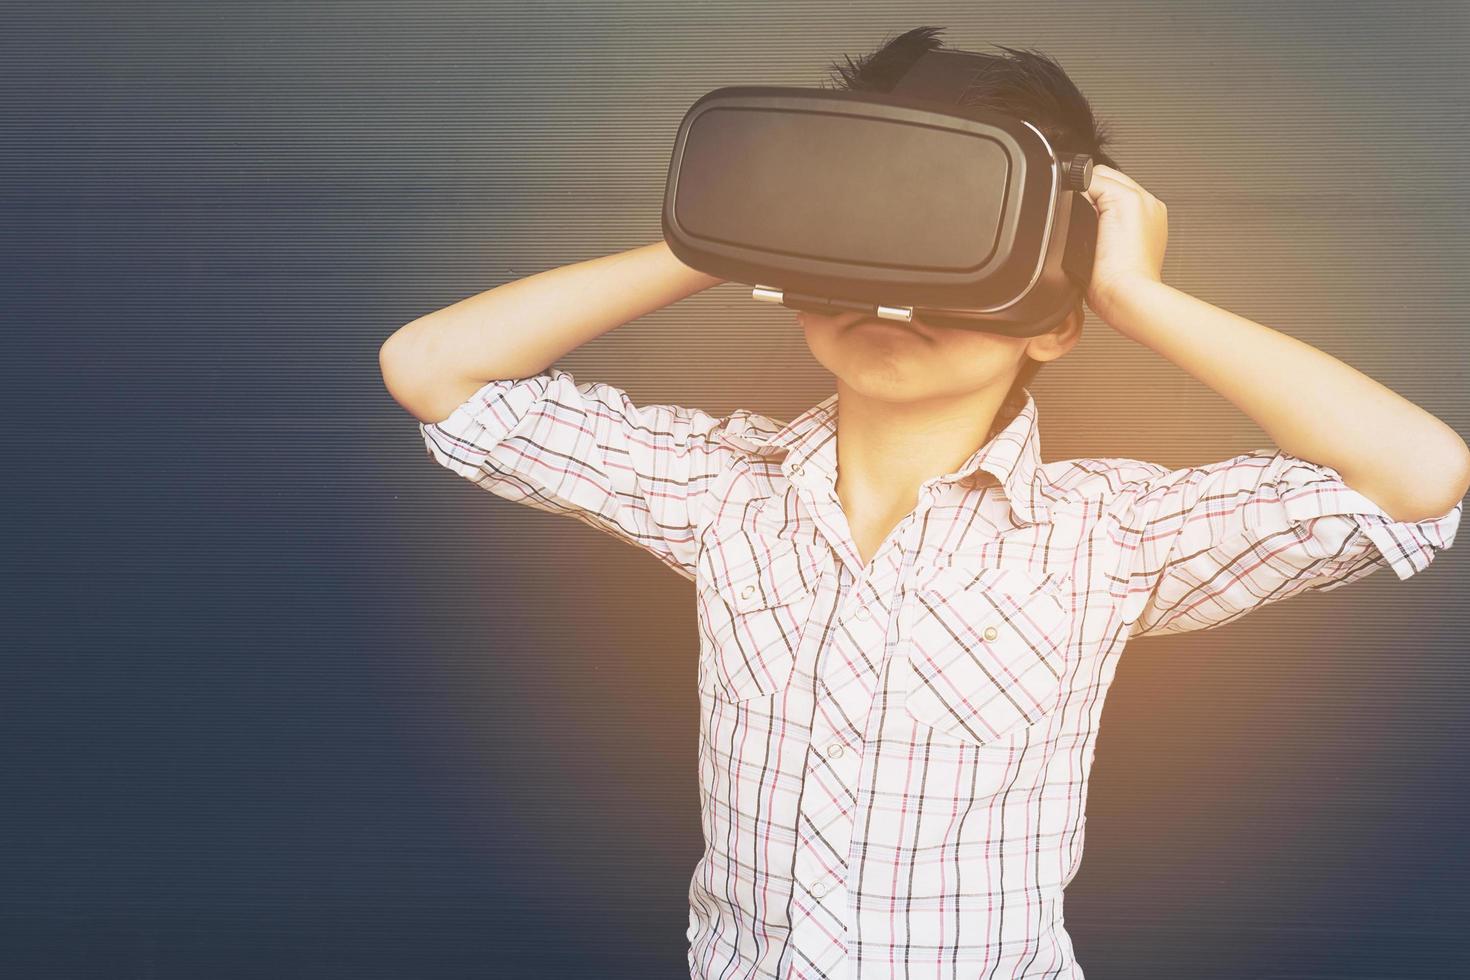 7 jaar kind dat vr virtual reality-game speelt foto